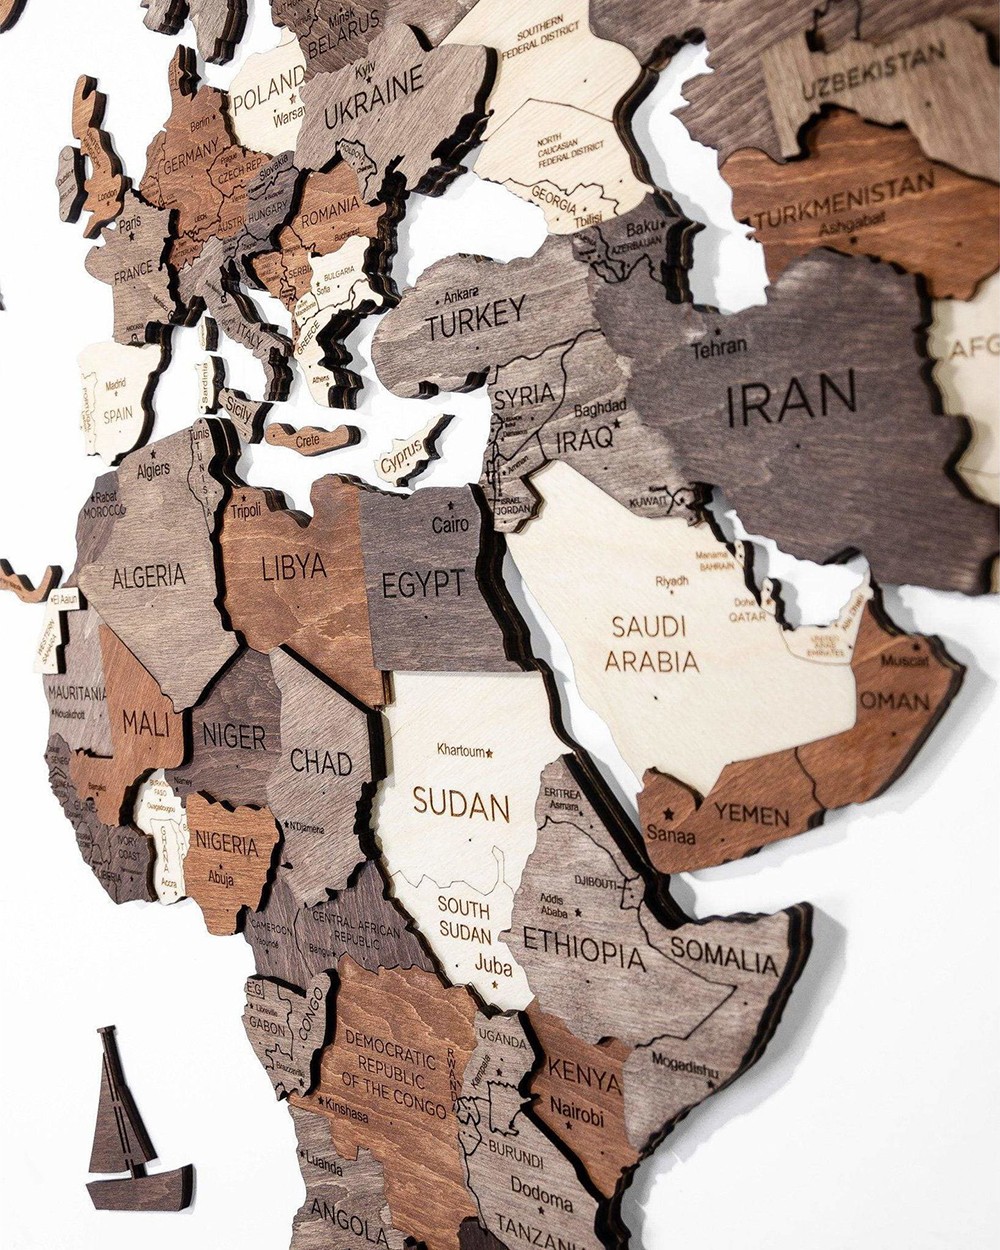 Duvar kıtalarında 3 boyutlu ahşap haritalar